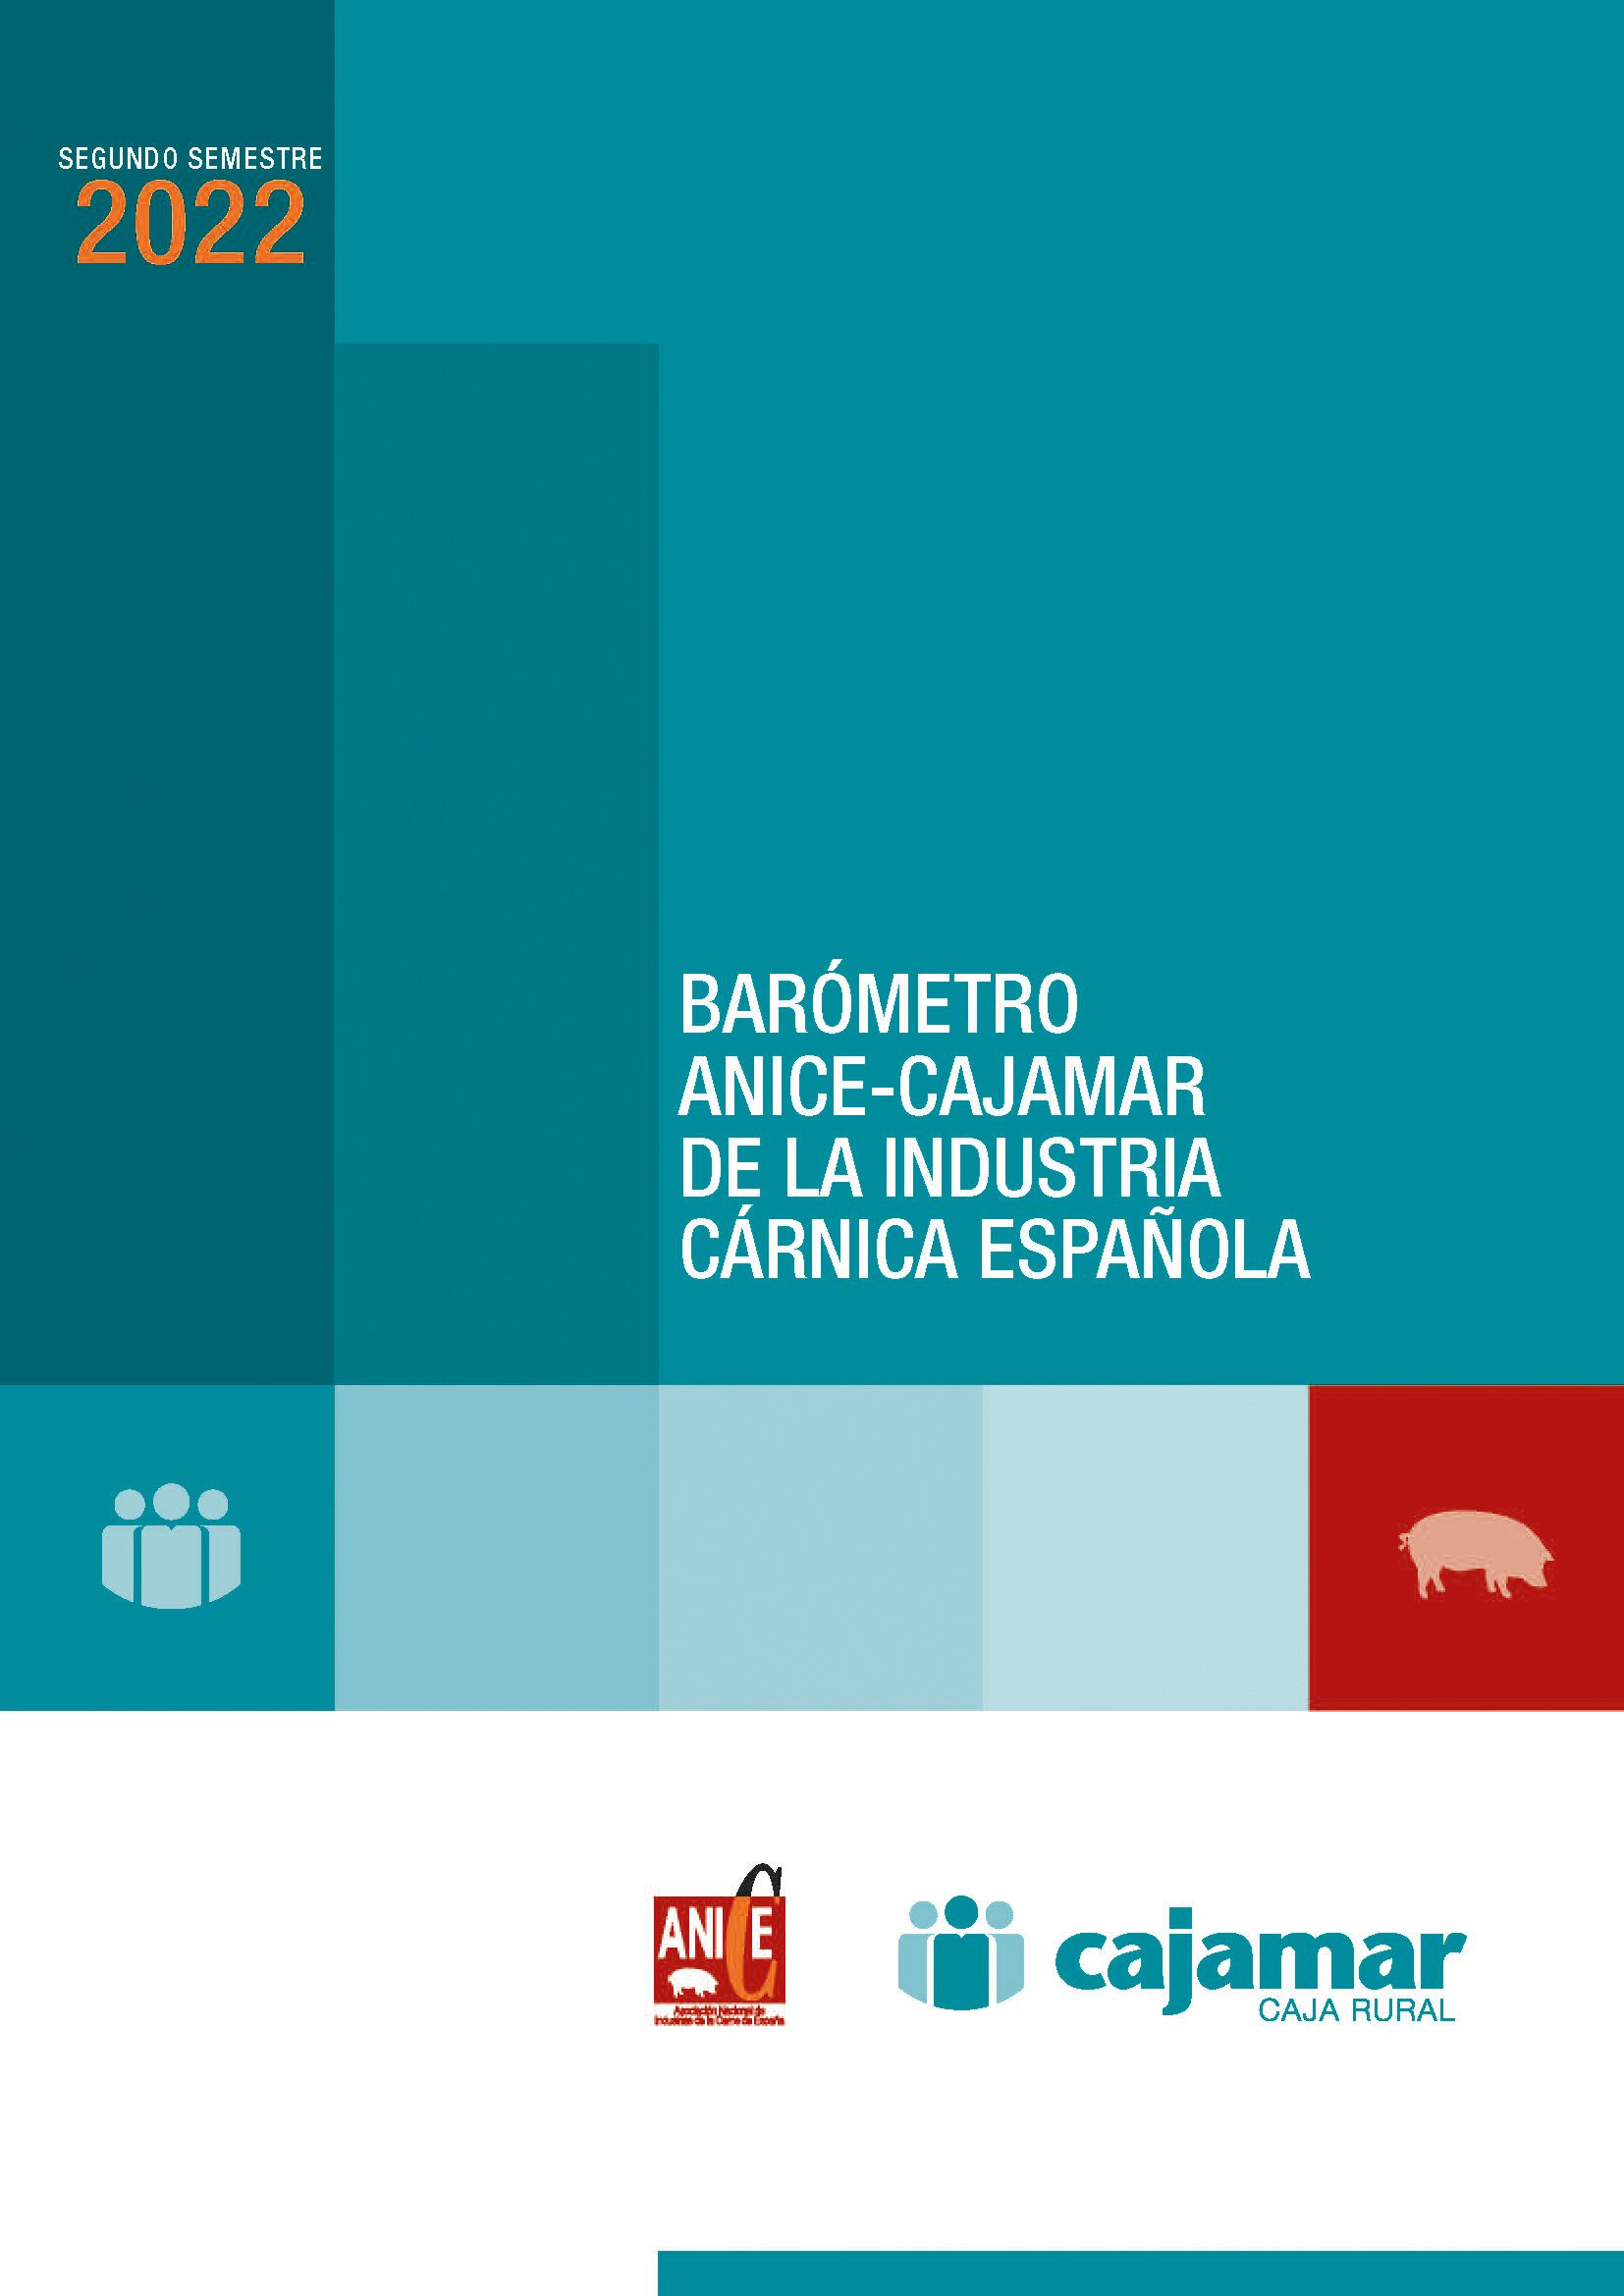 Portada del segundo semestre del 2022 del barómetro Anice-Cajamar de la industria cárnica